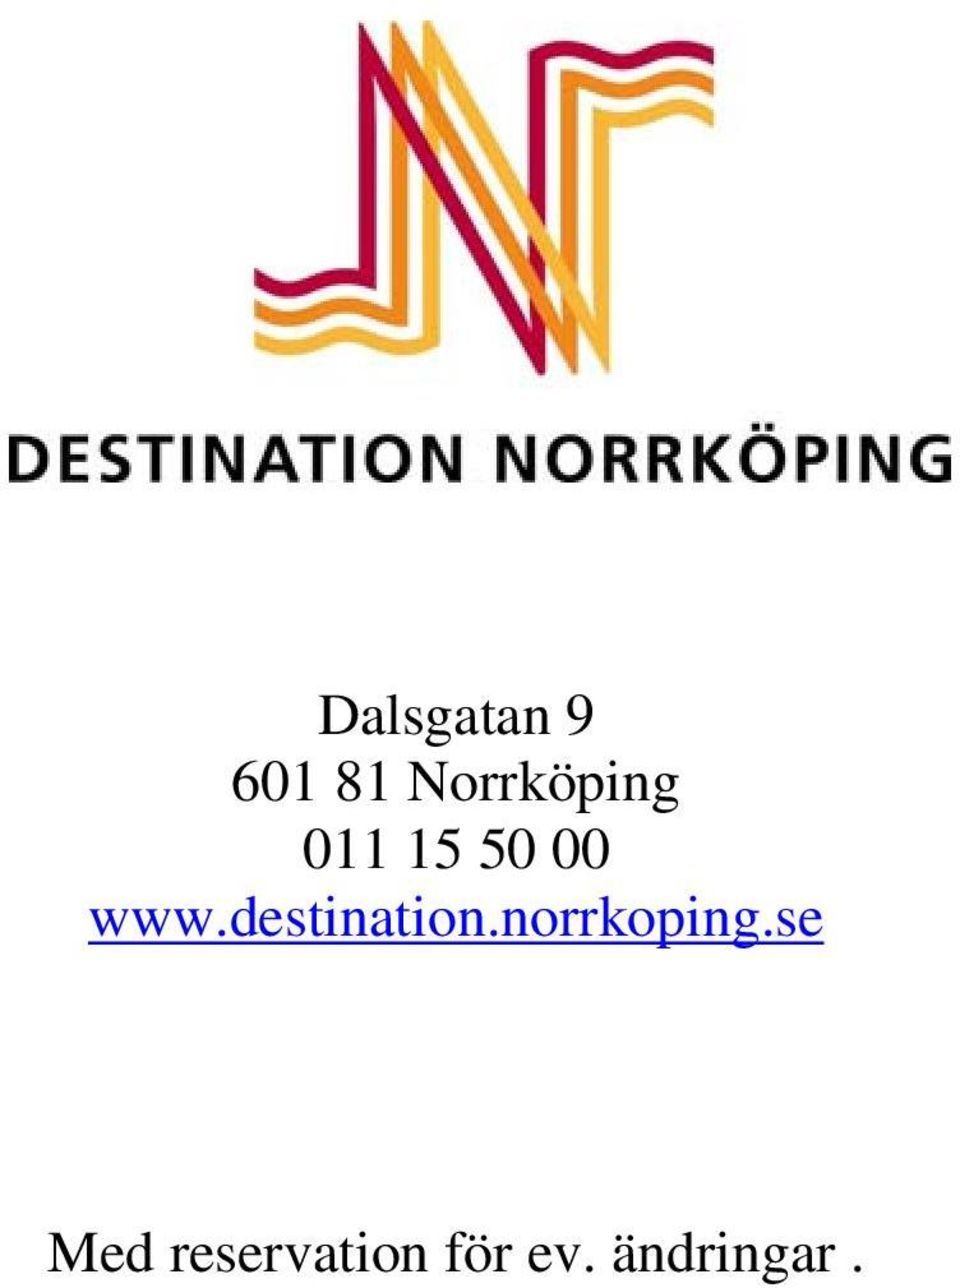 www.destination.norrkoping.